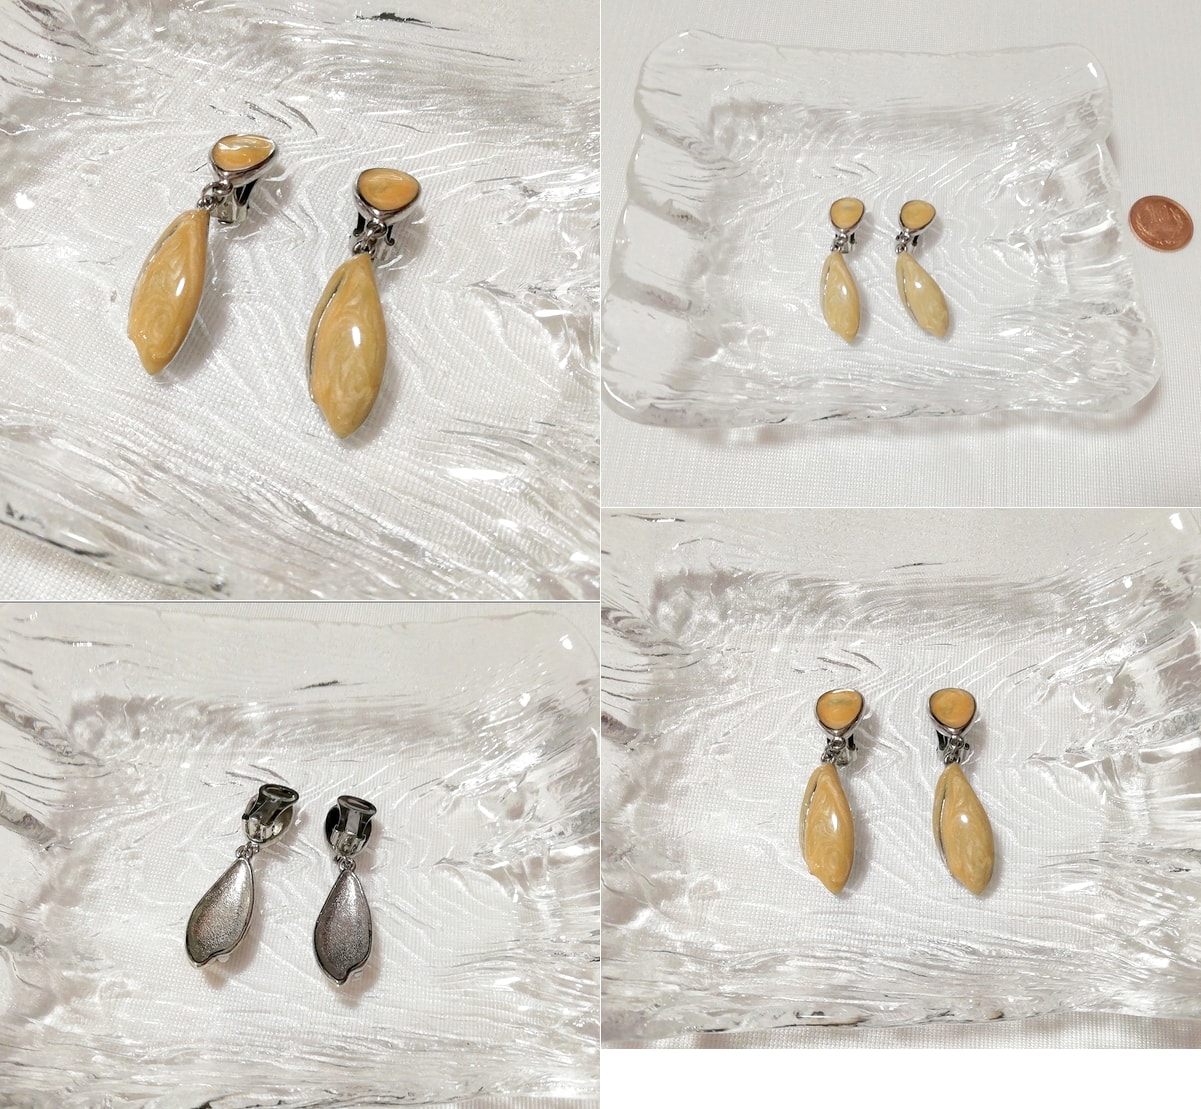 黄色葉っぱ型揺れるイヤリング/ジュエリー/アクセサリー Yellow leaf-shaped swaying earrings jewelry accessories, レディースアクセサリー, イヤリング, その他